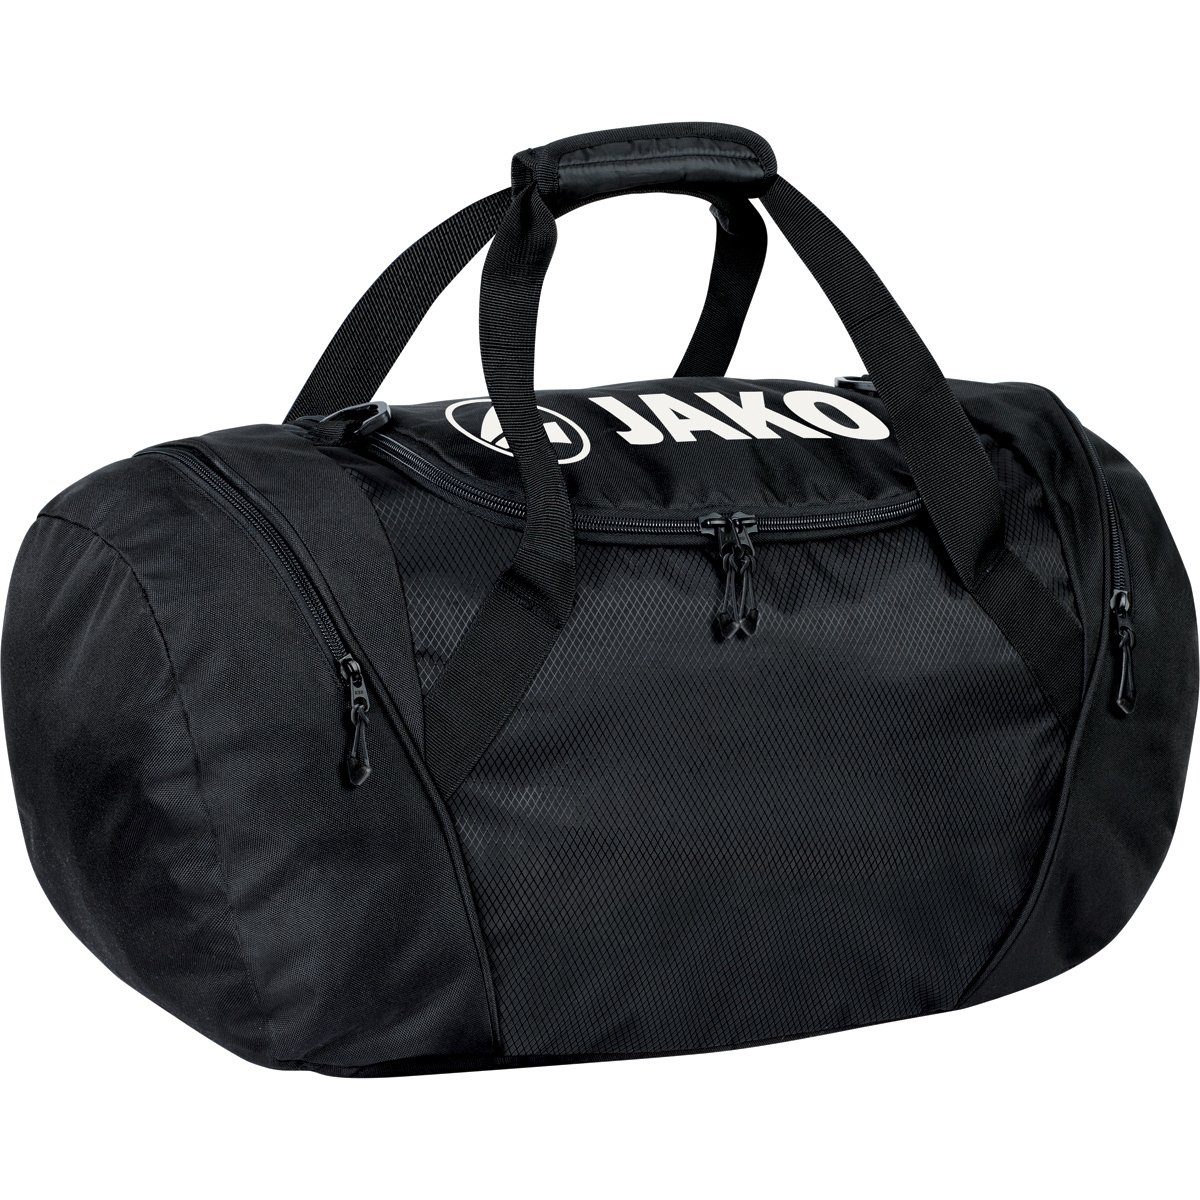 (Größe: M) Sporttasche 198908 Rucksack Jako und Sporttasche schwarz -